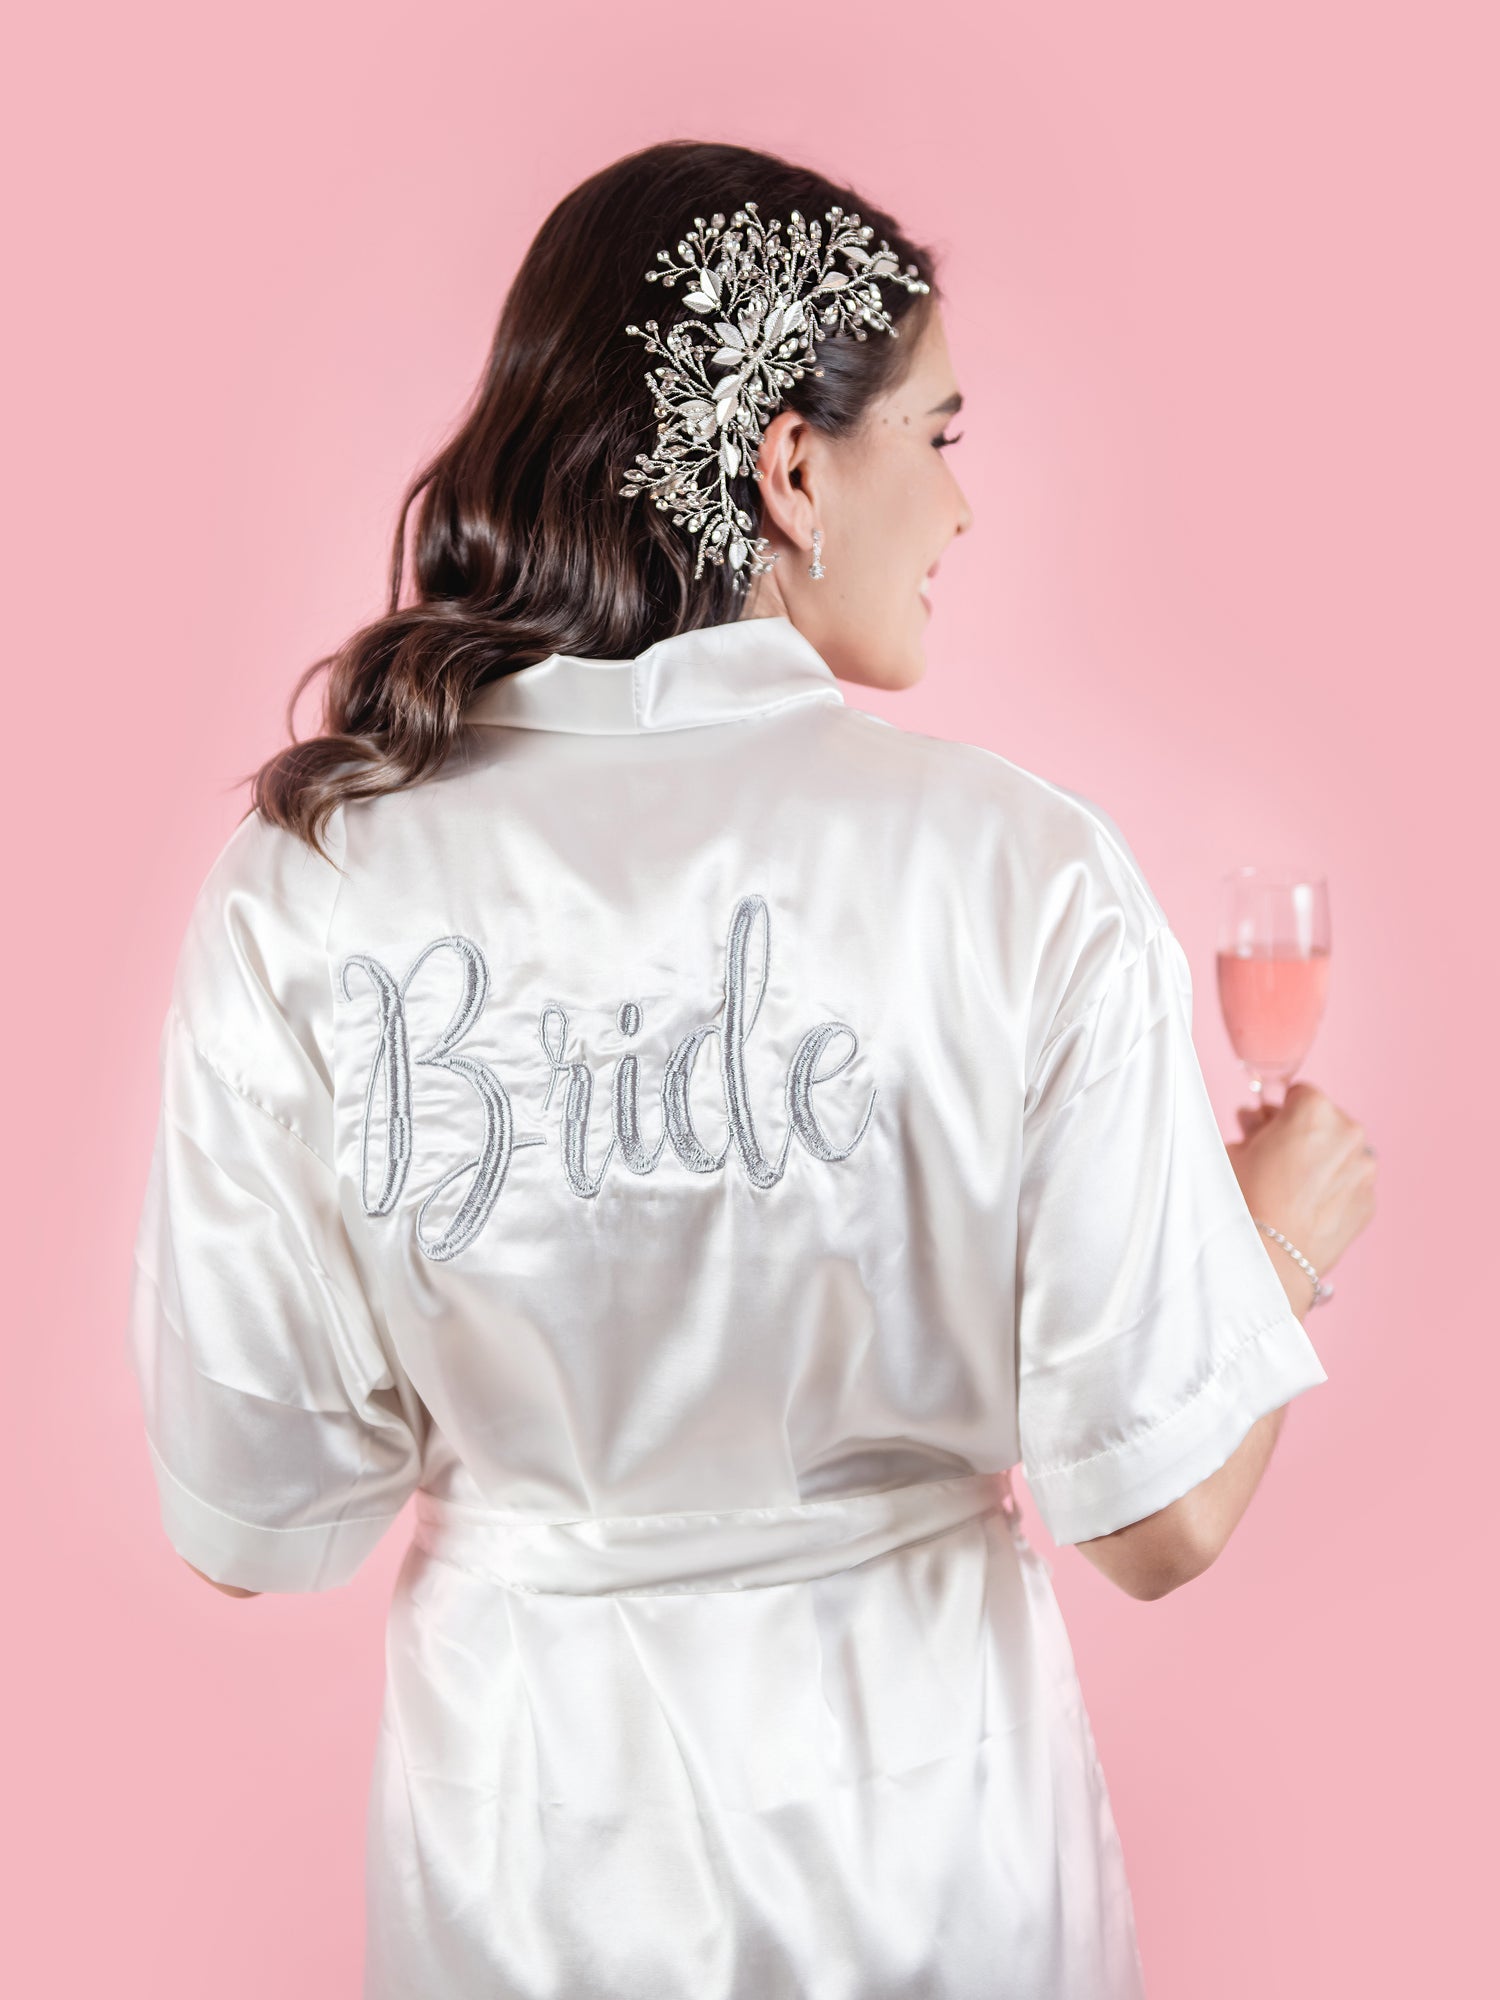 Bata Bordada “Bride” Blanca Plateado